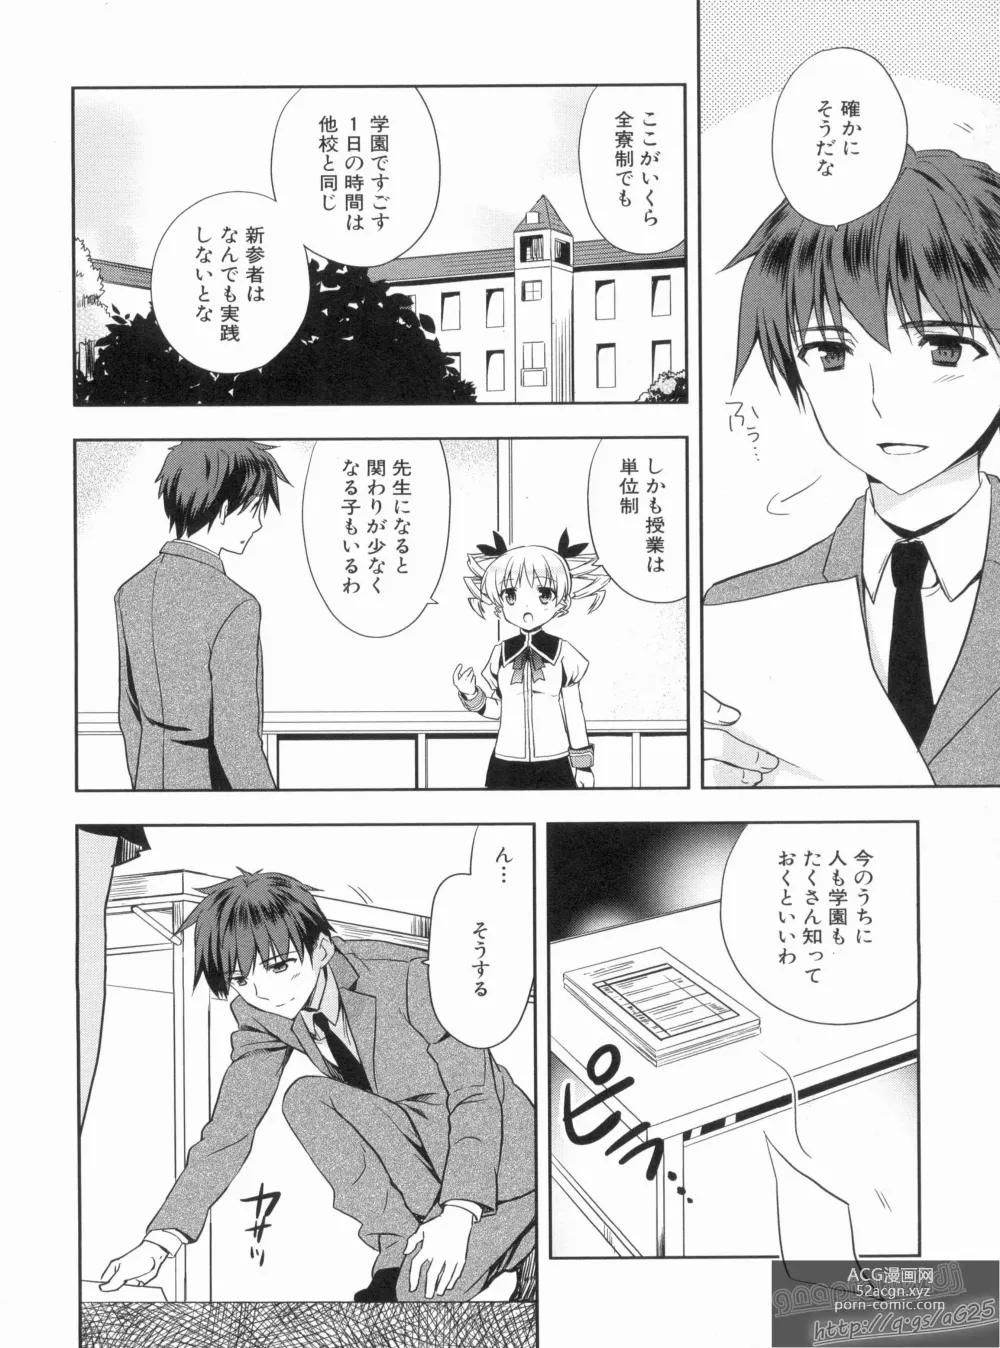 Page 8 of manga Shin Koihime Musou Gaishi Saiten VOL.3